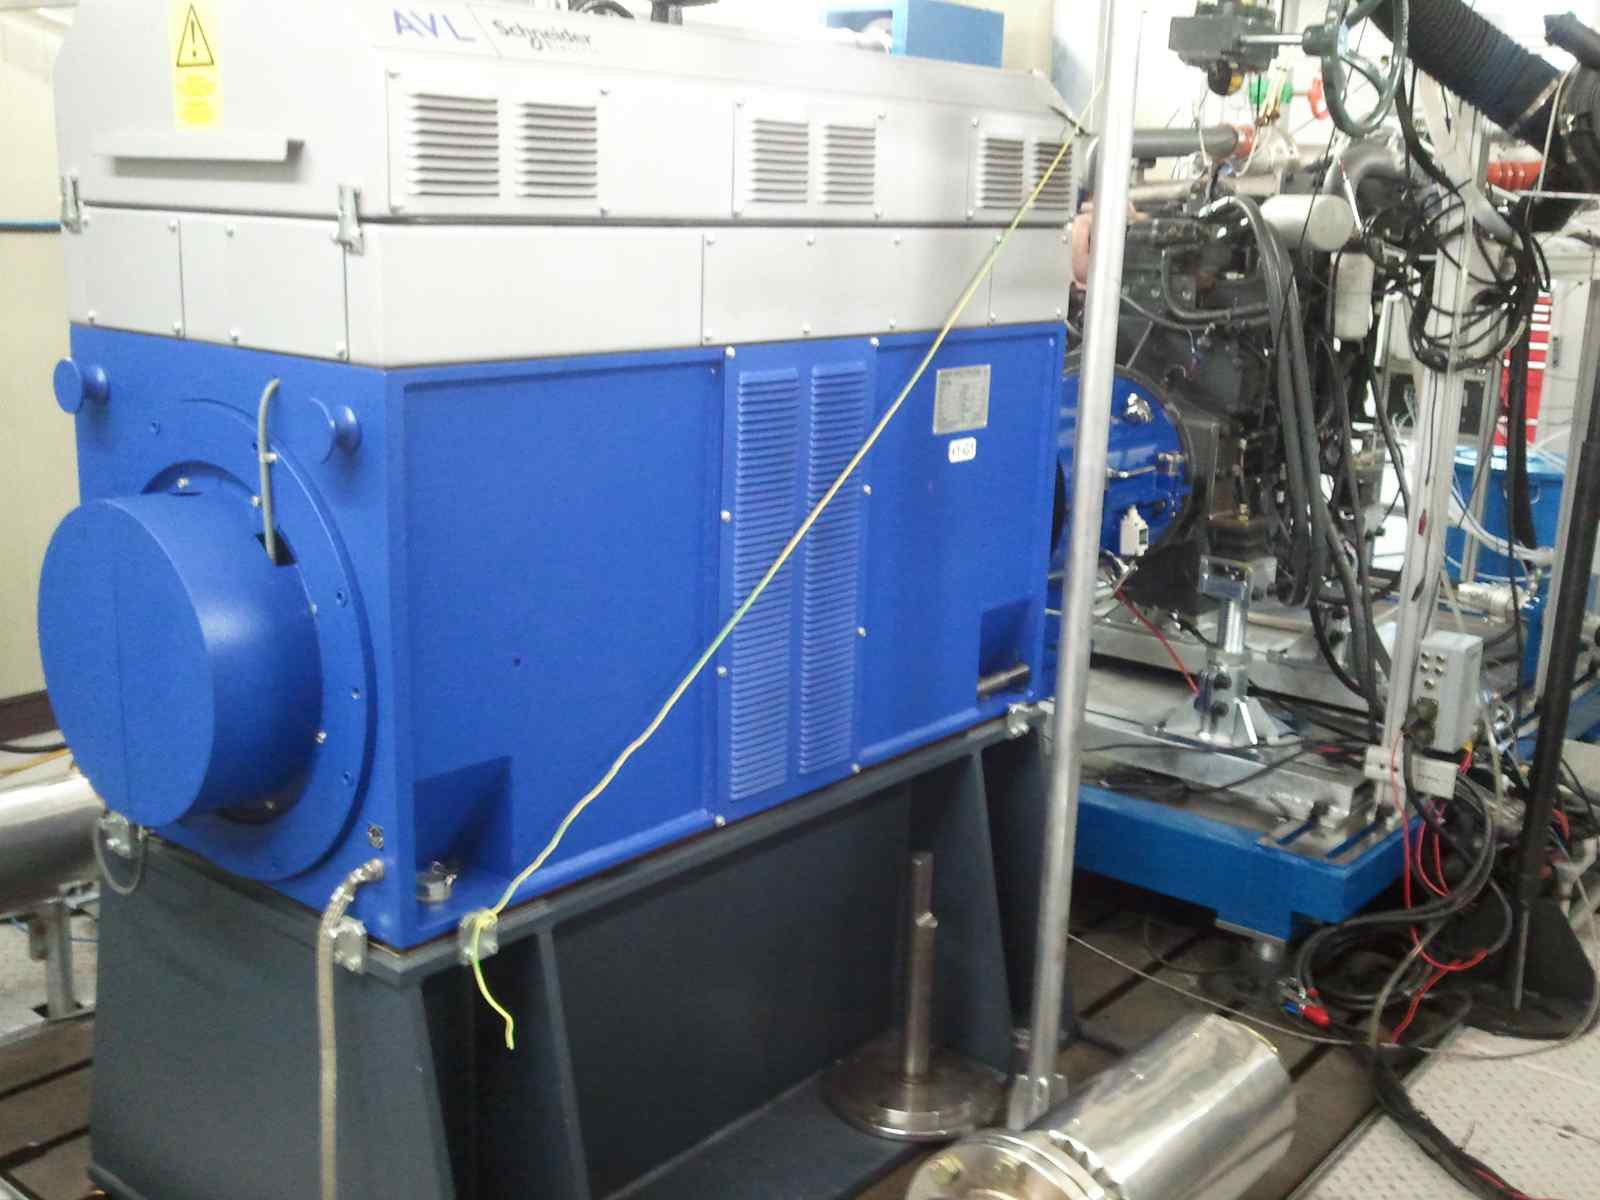 두산 인프러코어내에 설치되어 있는 원동기 동력계